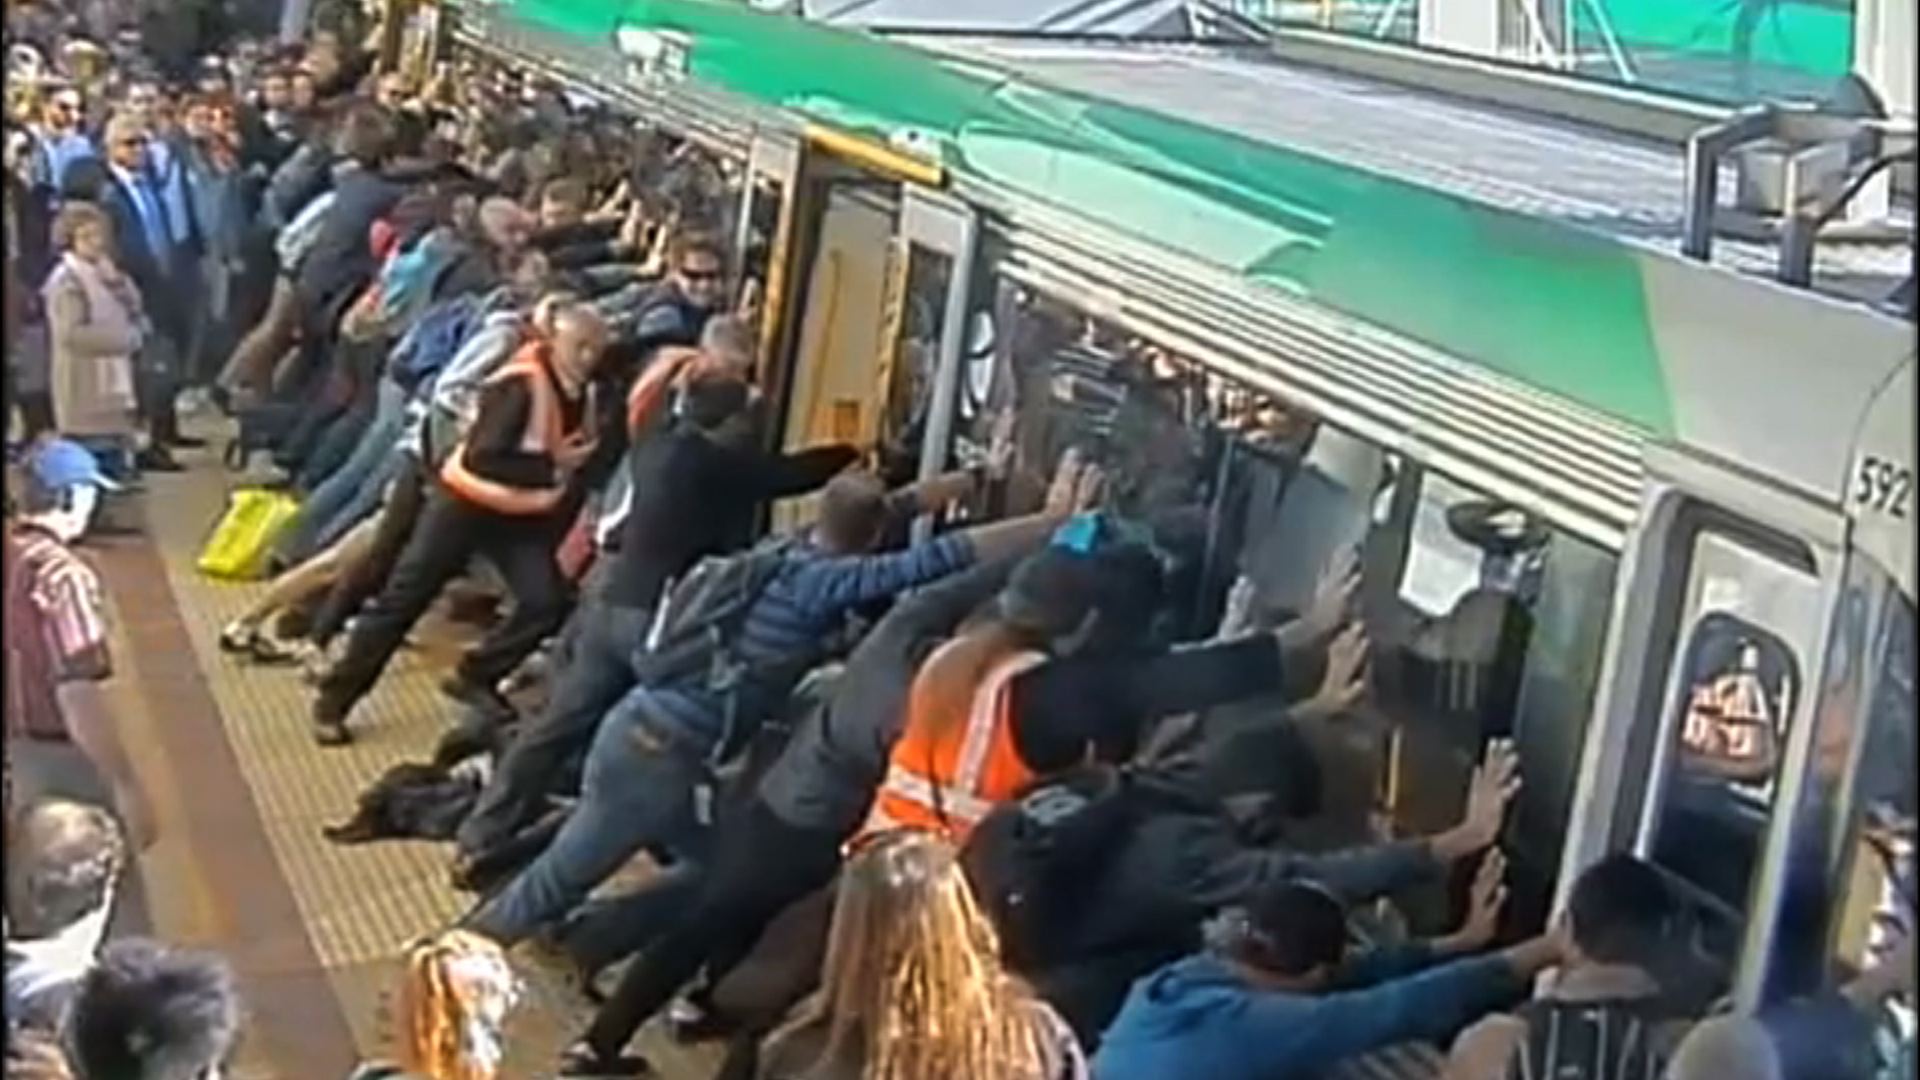 Pasajeros inclinan un vagón del metro para salvar a hombre atrapado (Video)